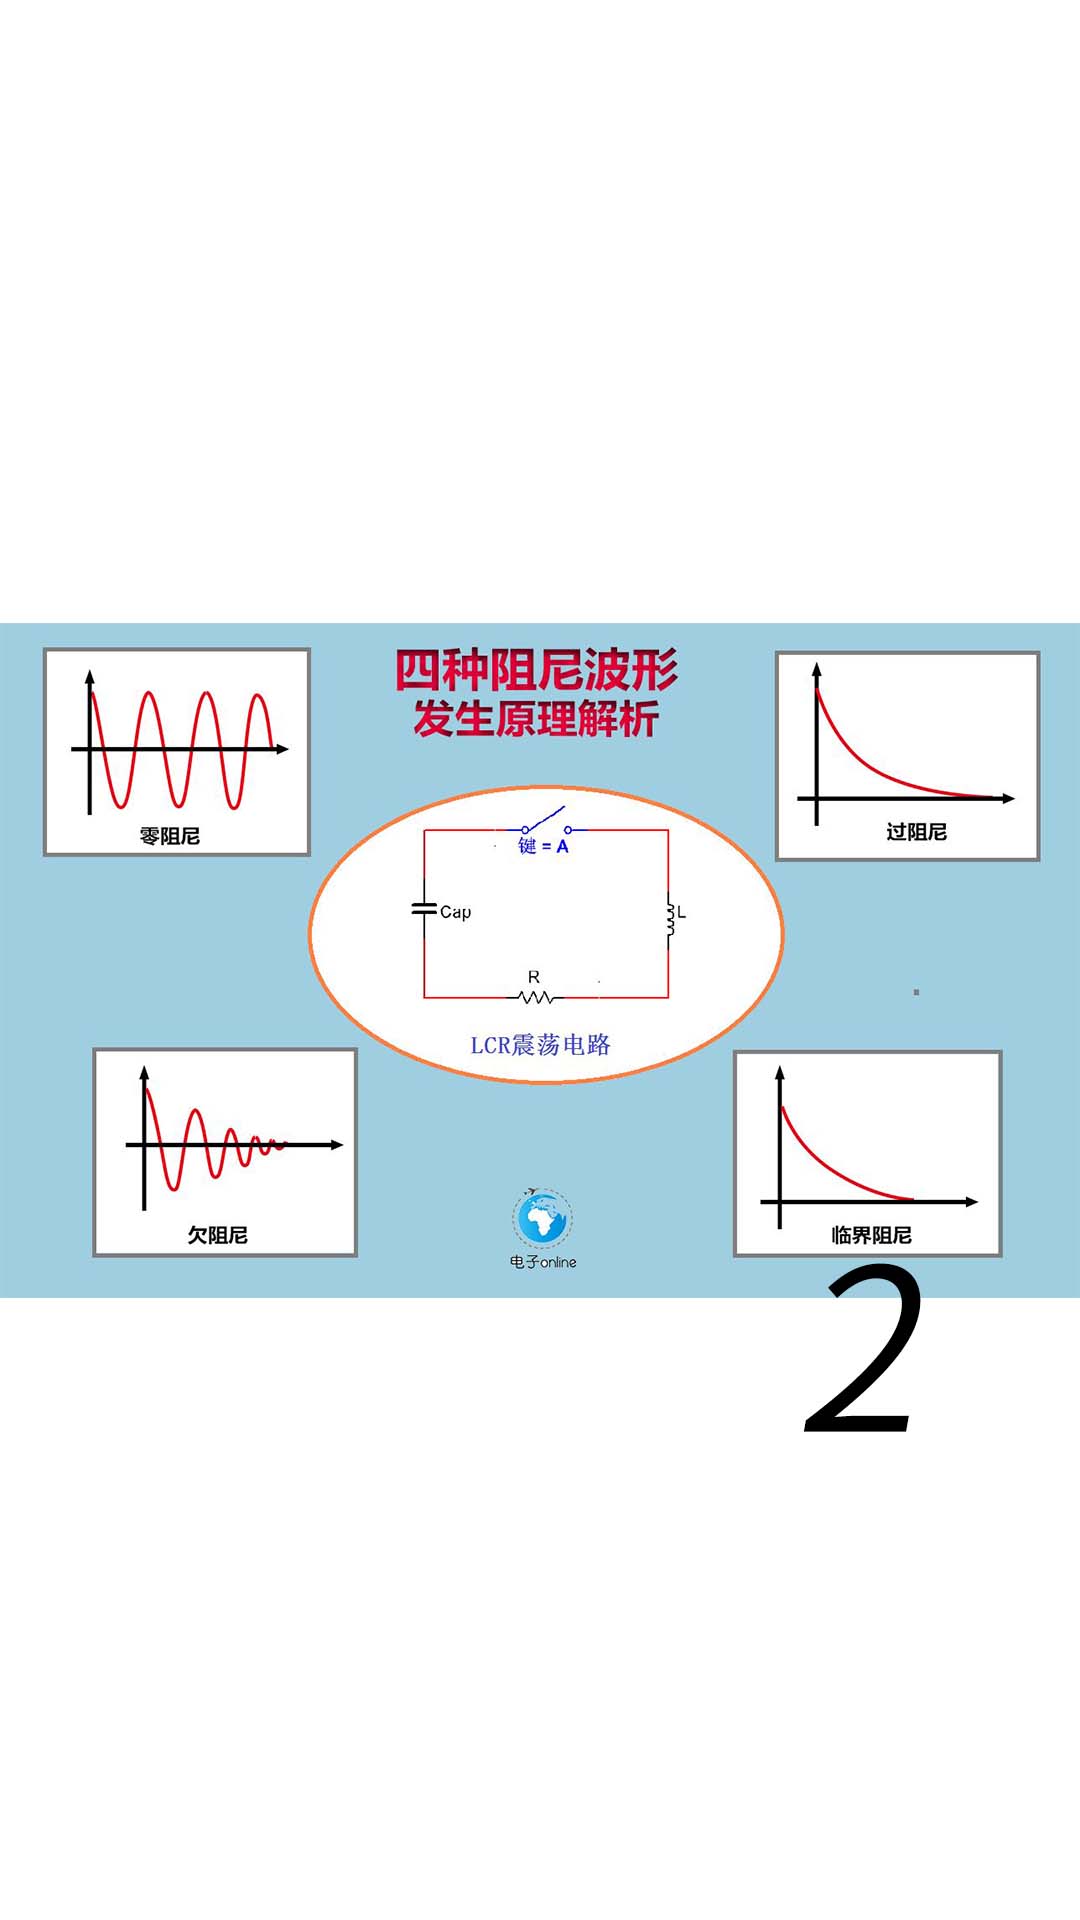 RLC串联谐振电路工作原理，解释了电路为什么会发生振荡！ - 1-LCR震荡电路解析教程-2